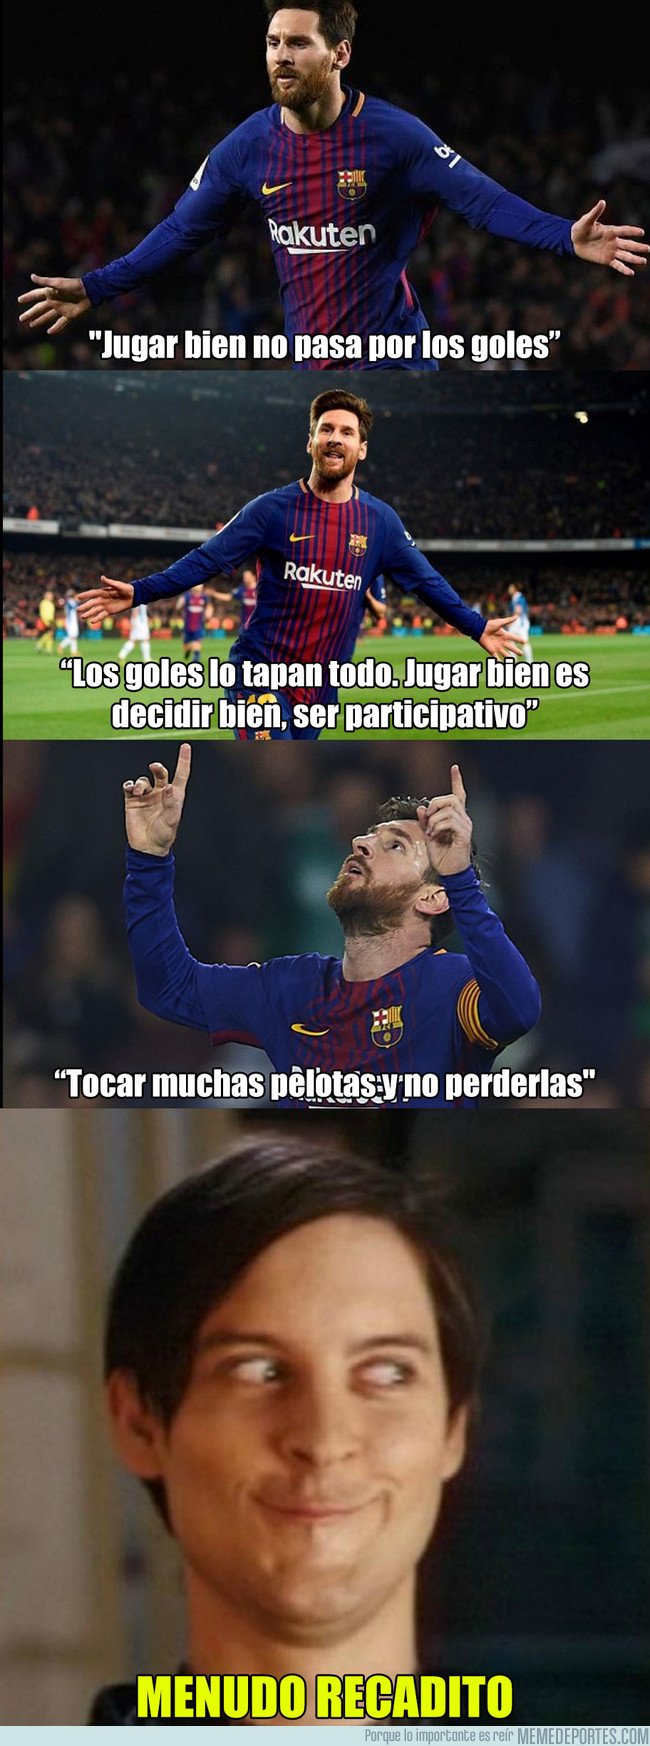 1026402 - El mensaje de Leo Messi con recadito a cierto personaje